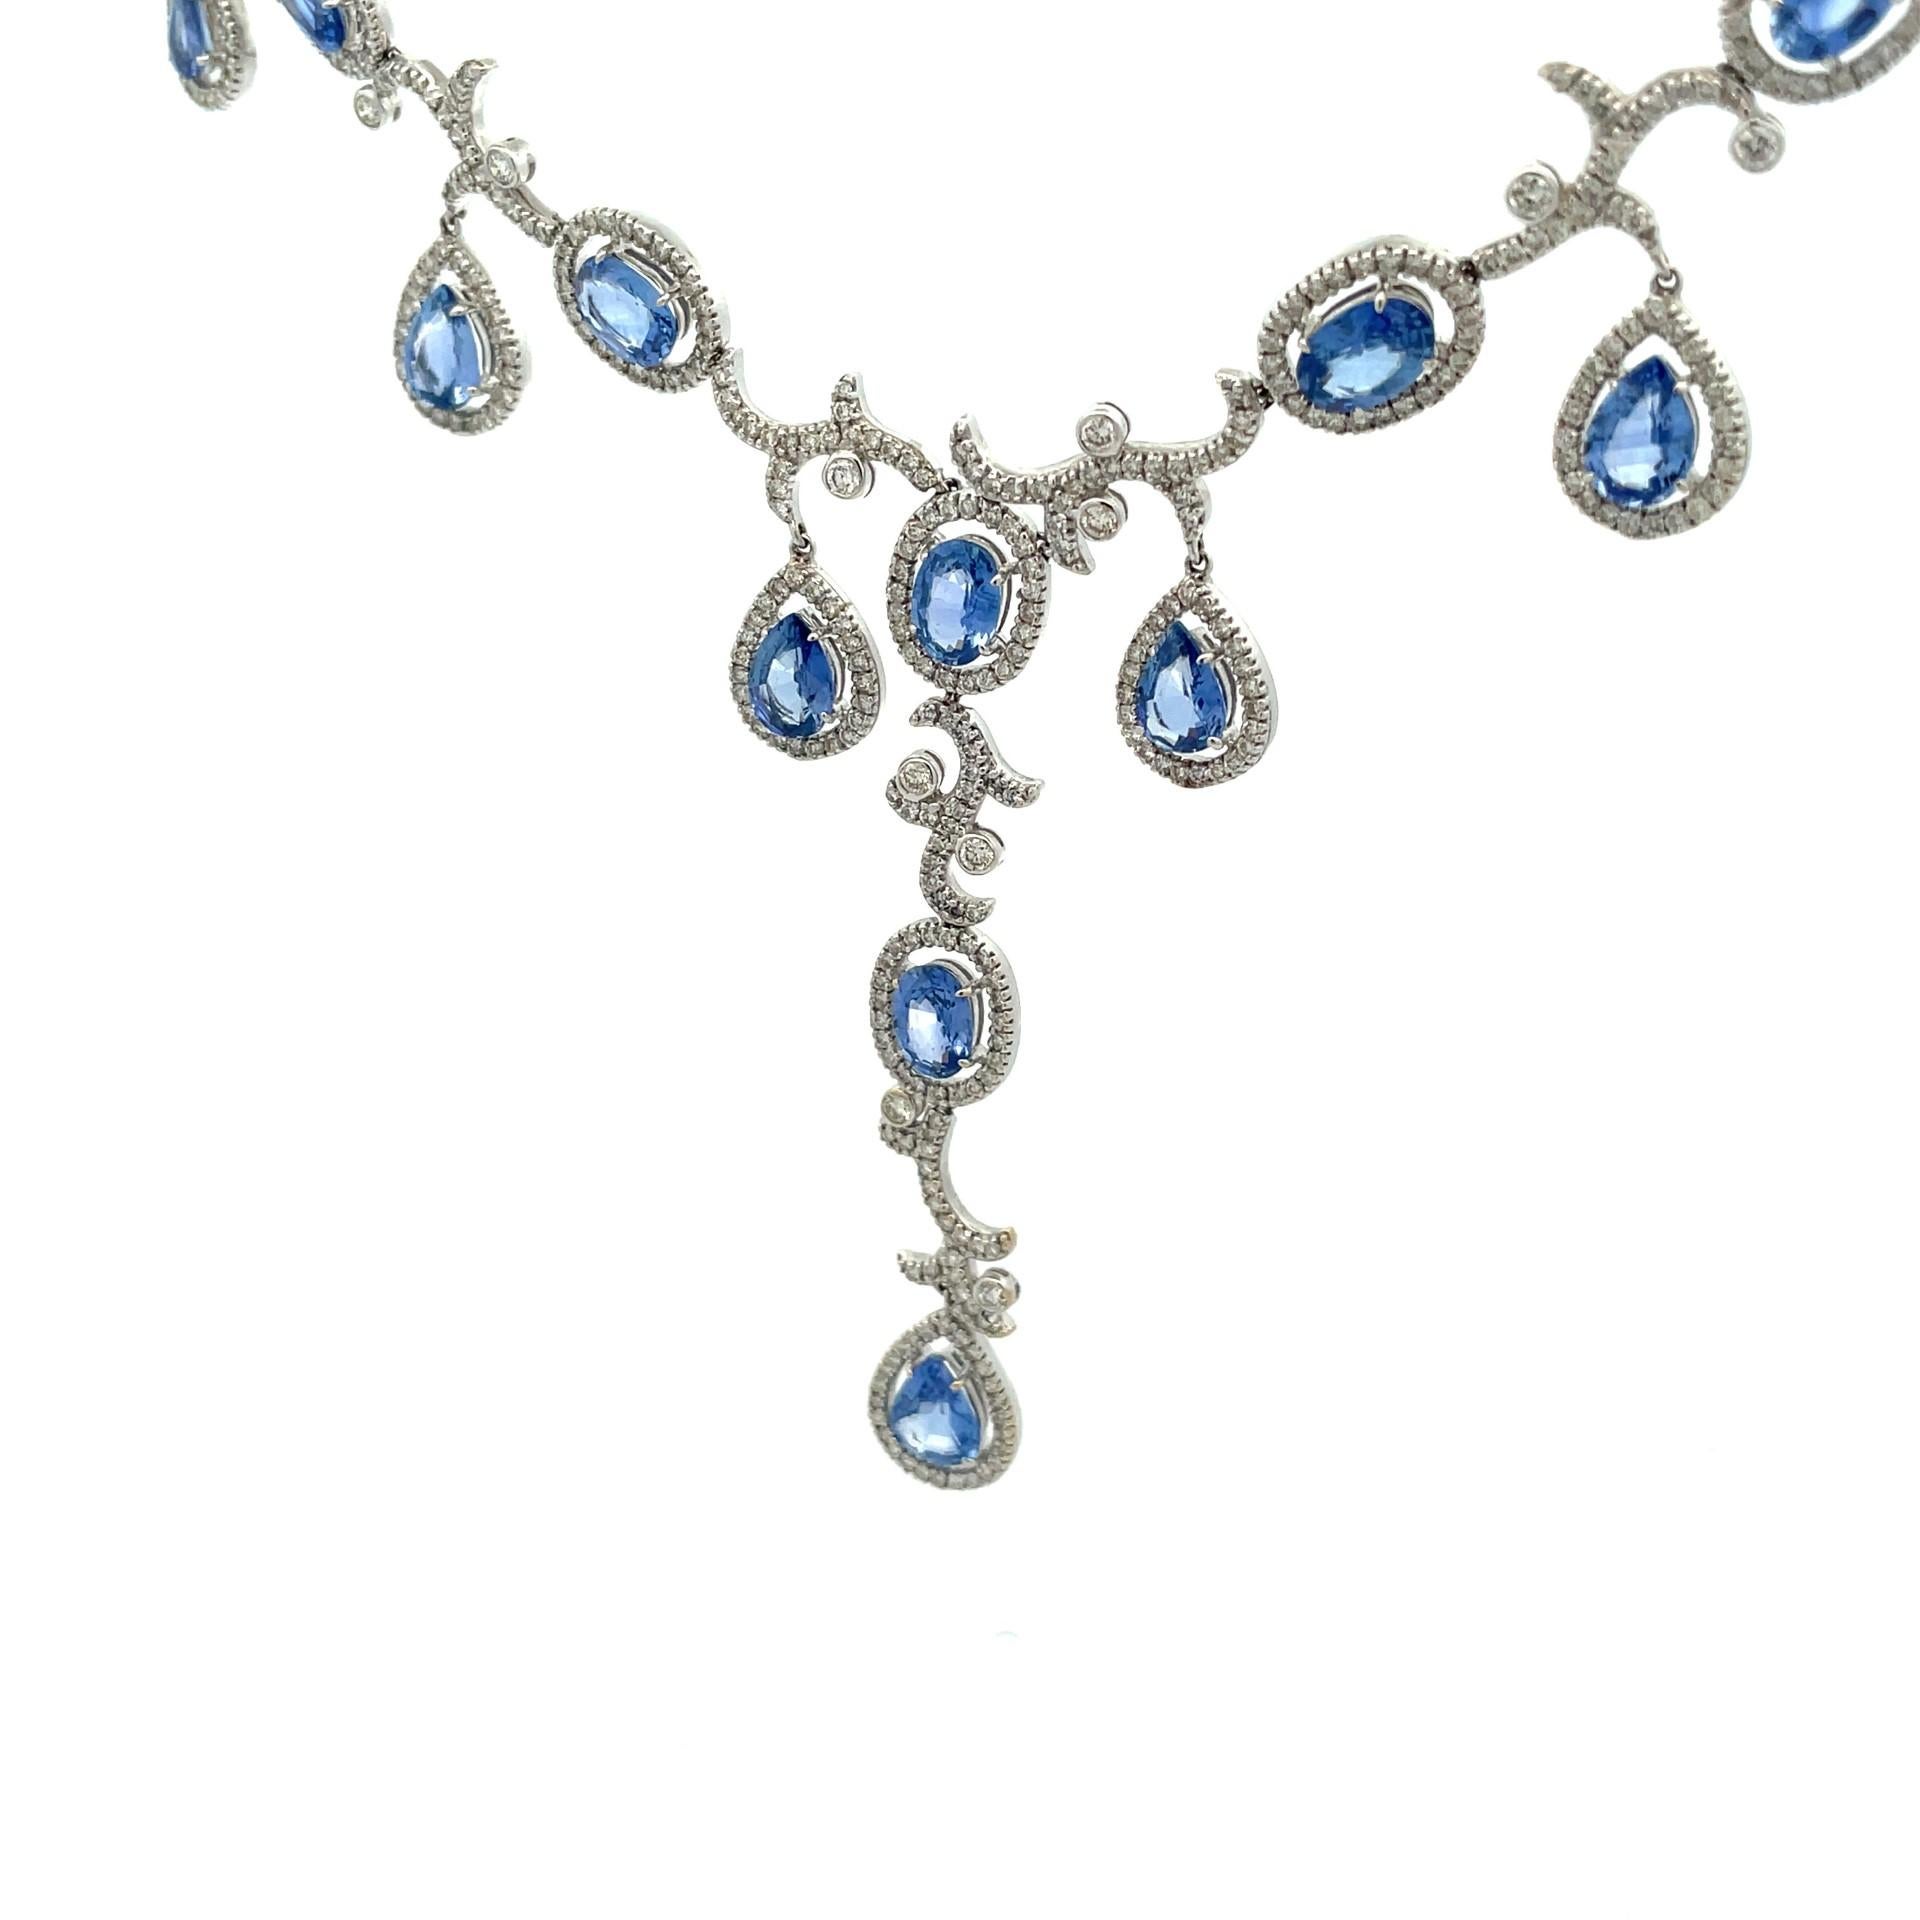 Notre collier de saphirs en or blanc 18 carats est composé d'une délicate cascade de saphirs bleus naturels de Ceylan de forme ovale et poire et d'un halo de diamants pavés pour encadrer un look de soirée élégant.

844 diamants blancs naturels